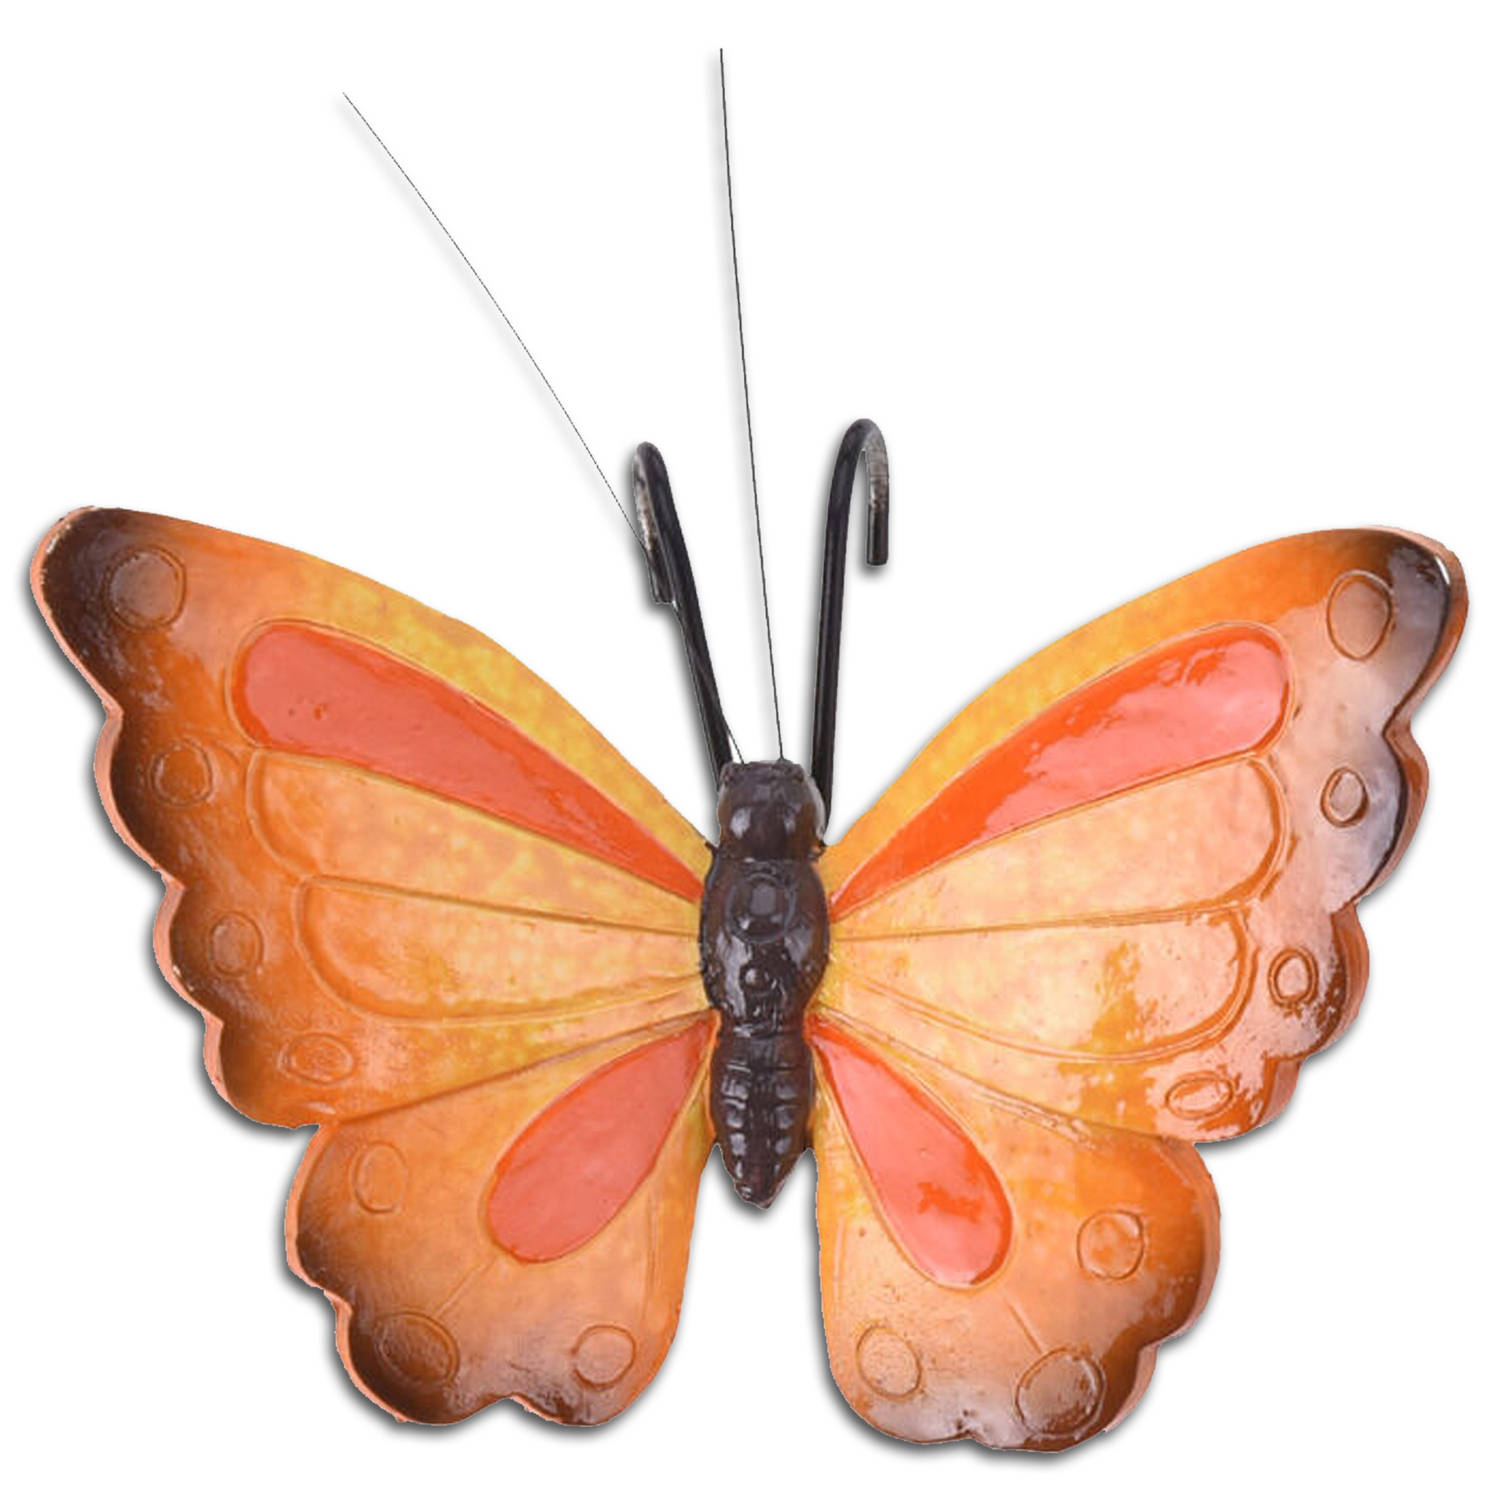 Pro Garden tuindecoratie bloempothanger vlinder kunststeen oranje-rood- 13 x 10 cm Tuinbeelden